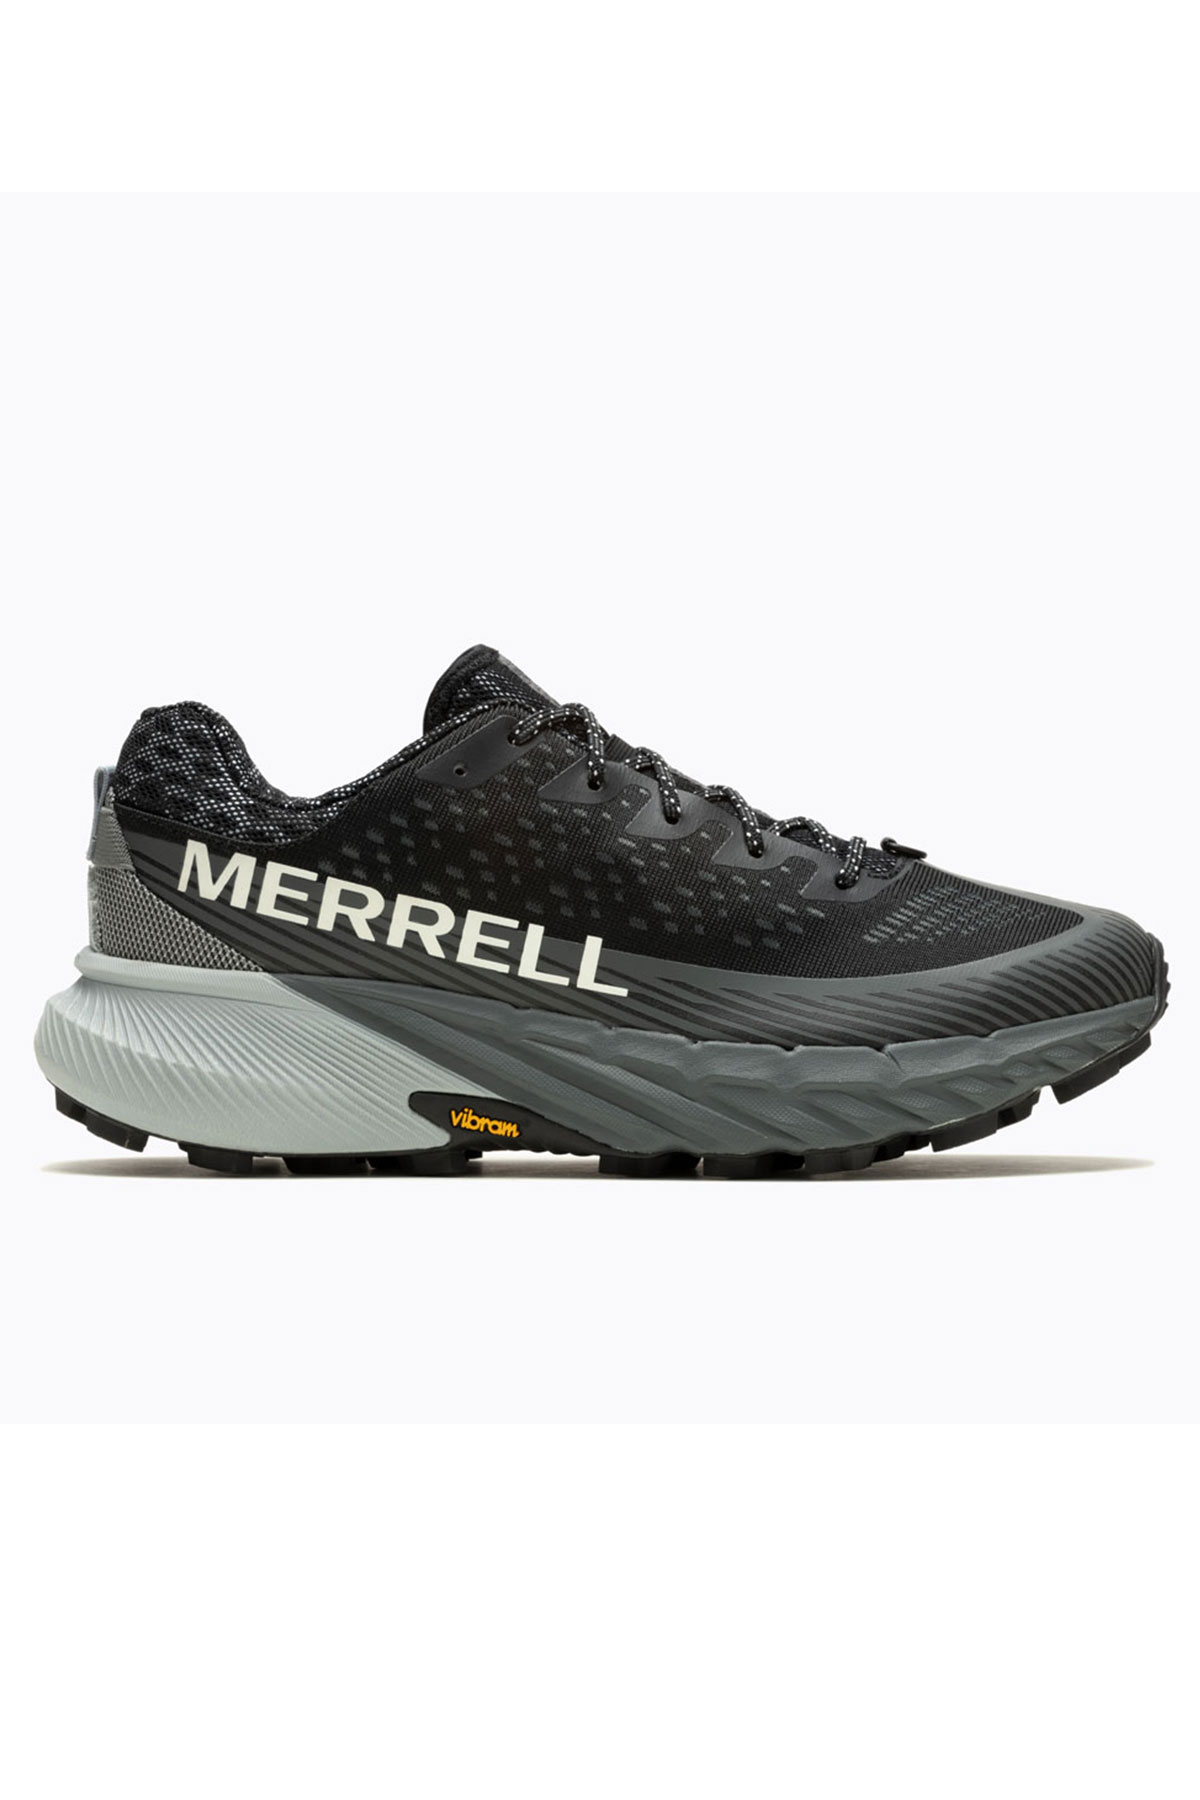 Merrell Agility Peak 5 Erkek Patika Siyah Koşu Ayakkabısı 